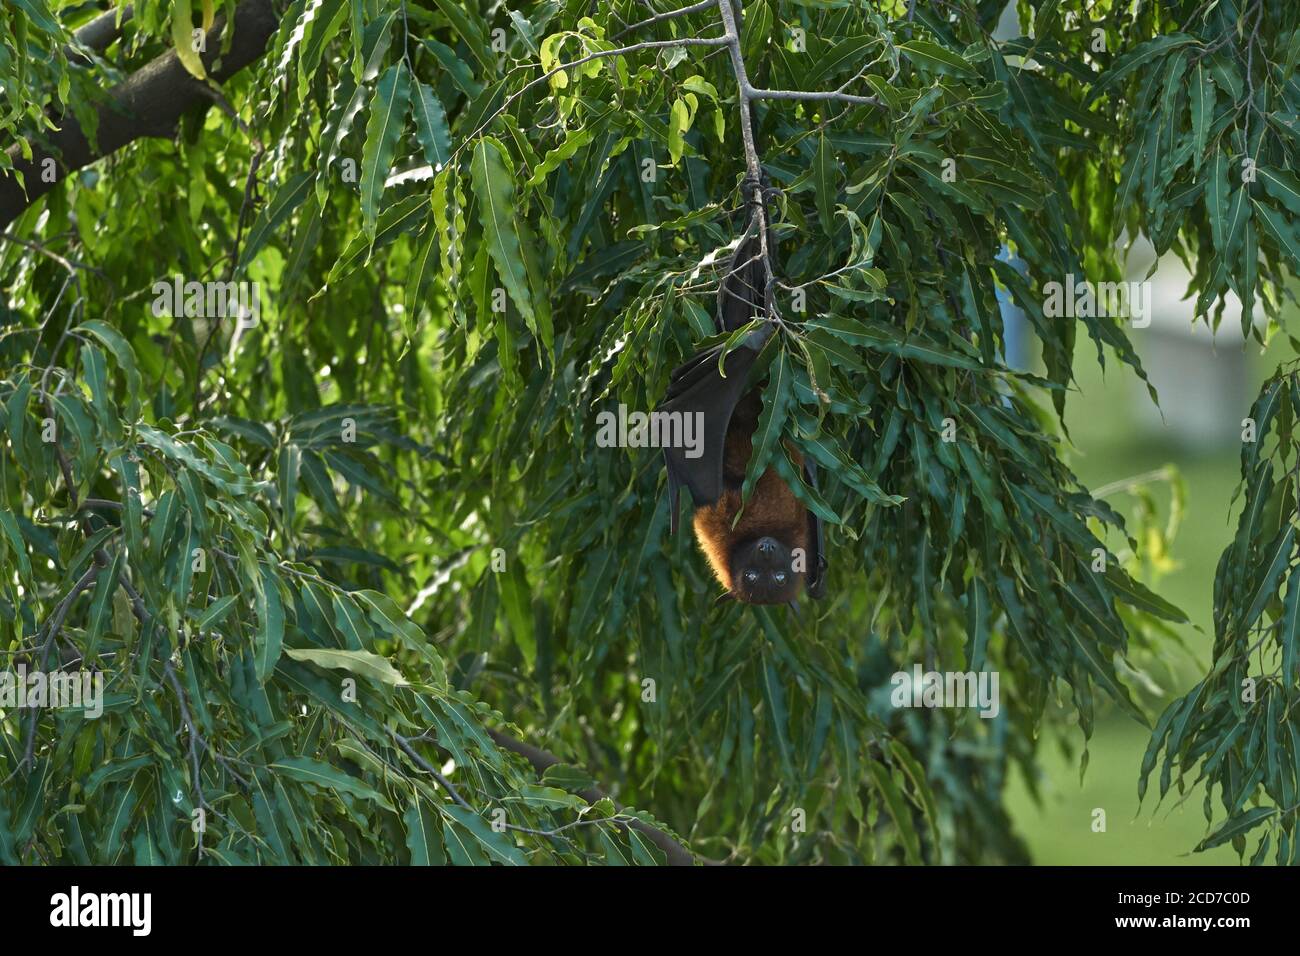 Le renard volant indien (Pteropus giganteus) aussi connu sous le nom de chauve-souris de fruits indiens accrochée à un arbre. Banque D'Images